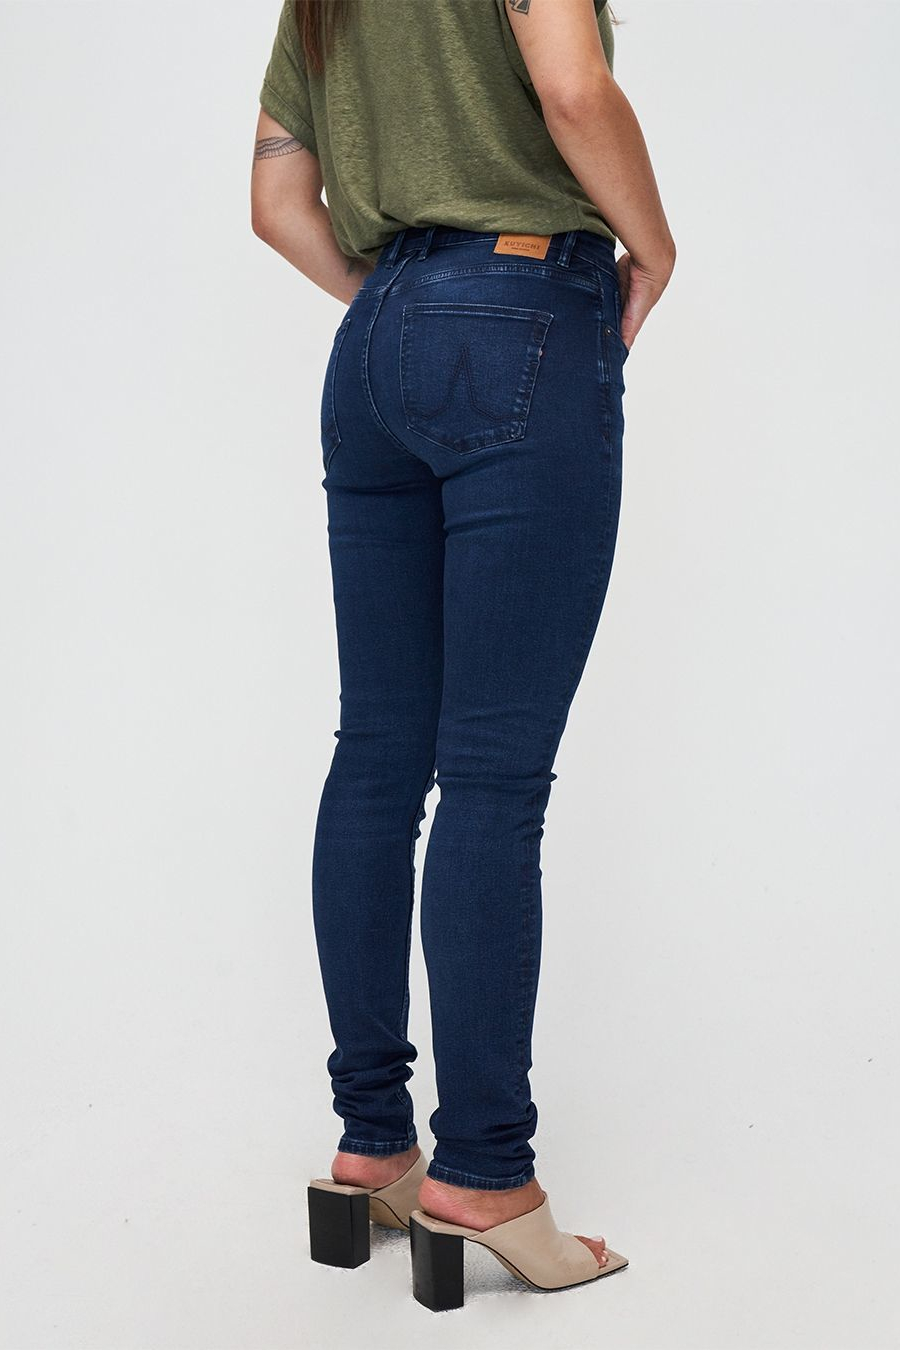 Kuyichi Jeans Carey Skinny True Blue 1